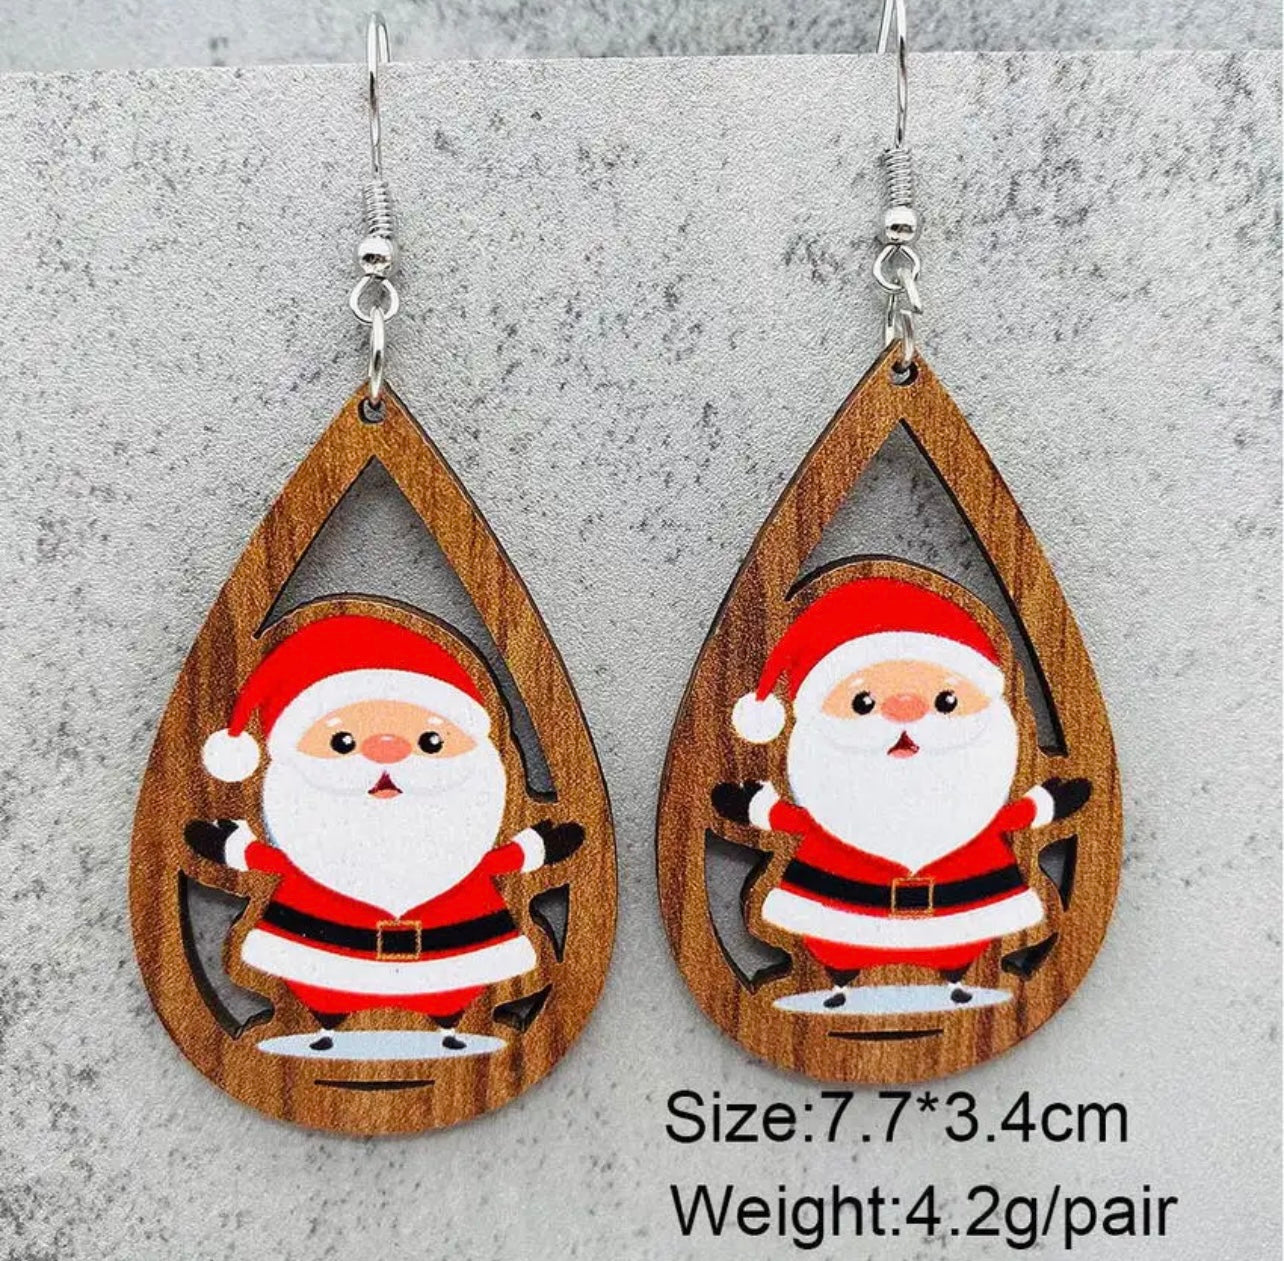 Adorable Wooden Santa Earrings